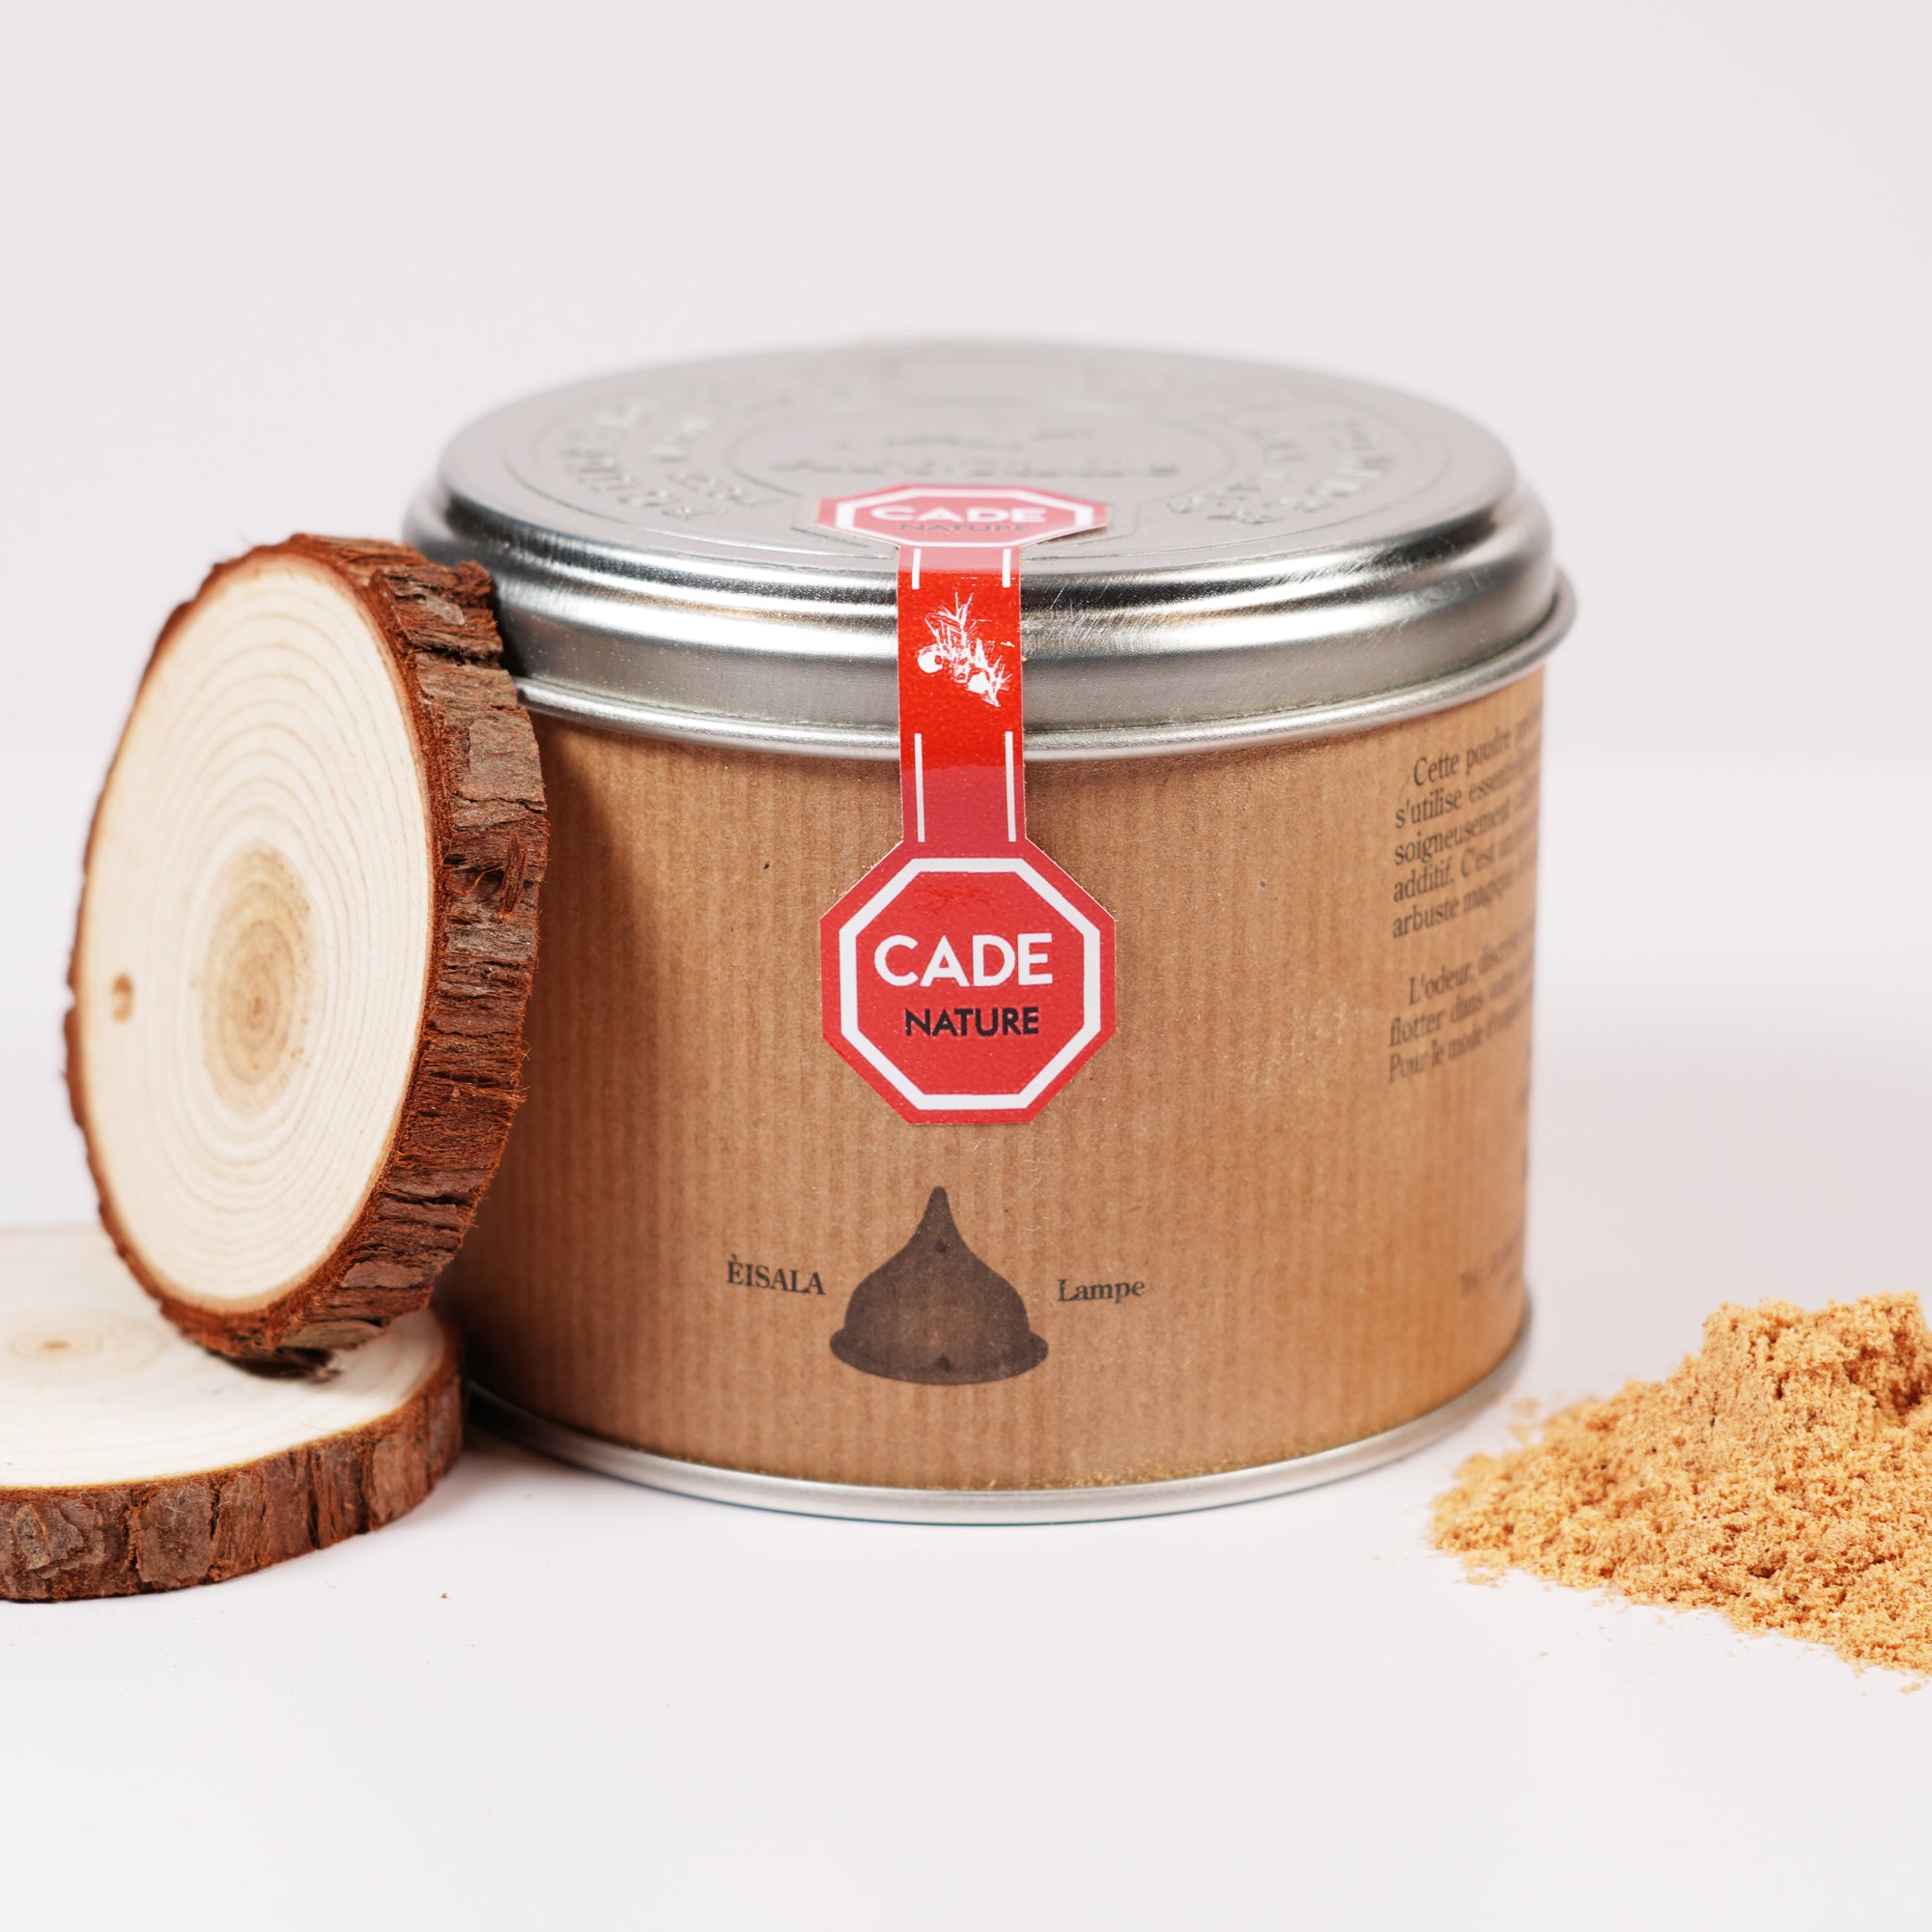 SENTJO Premium Natural Cade Incense Powder 100% Natural Made in France 3.2oz